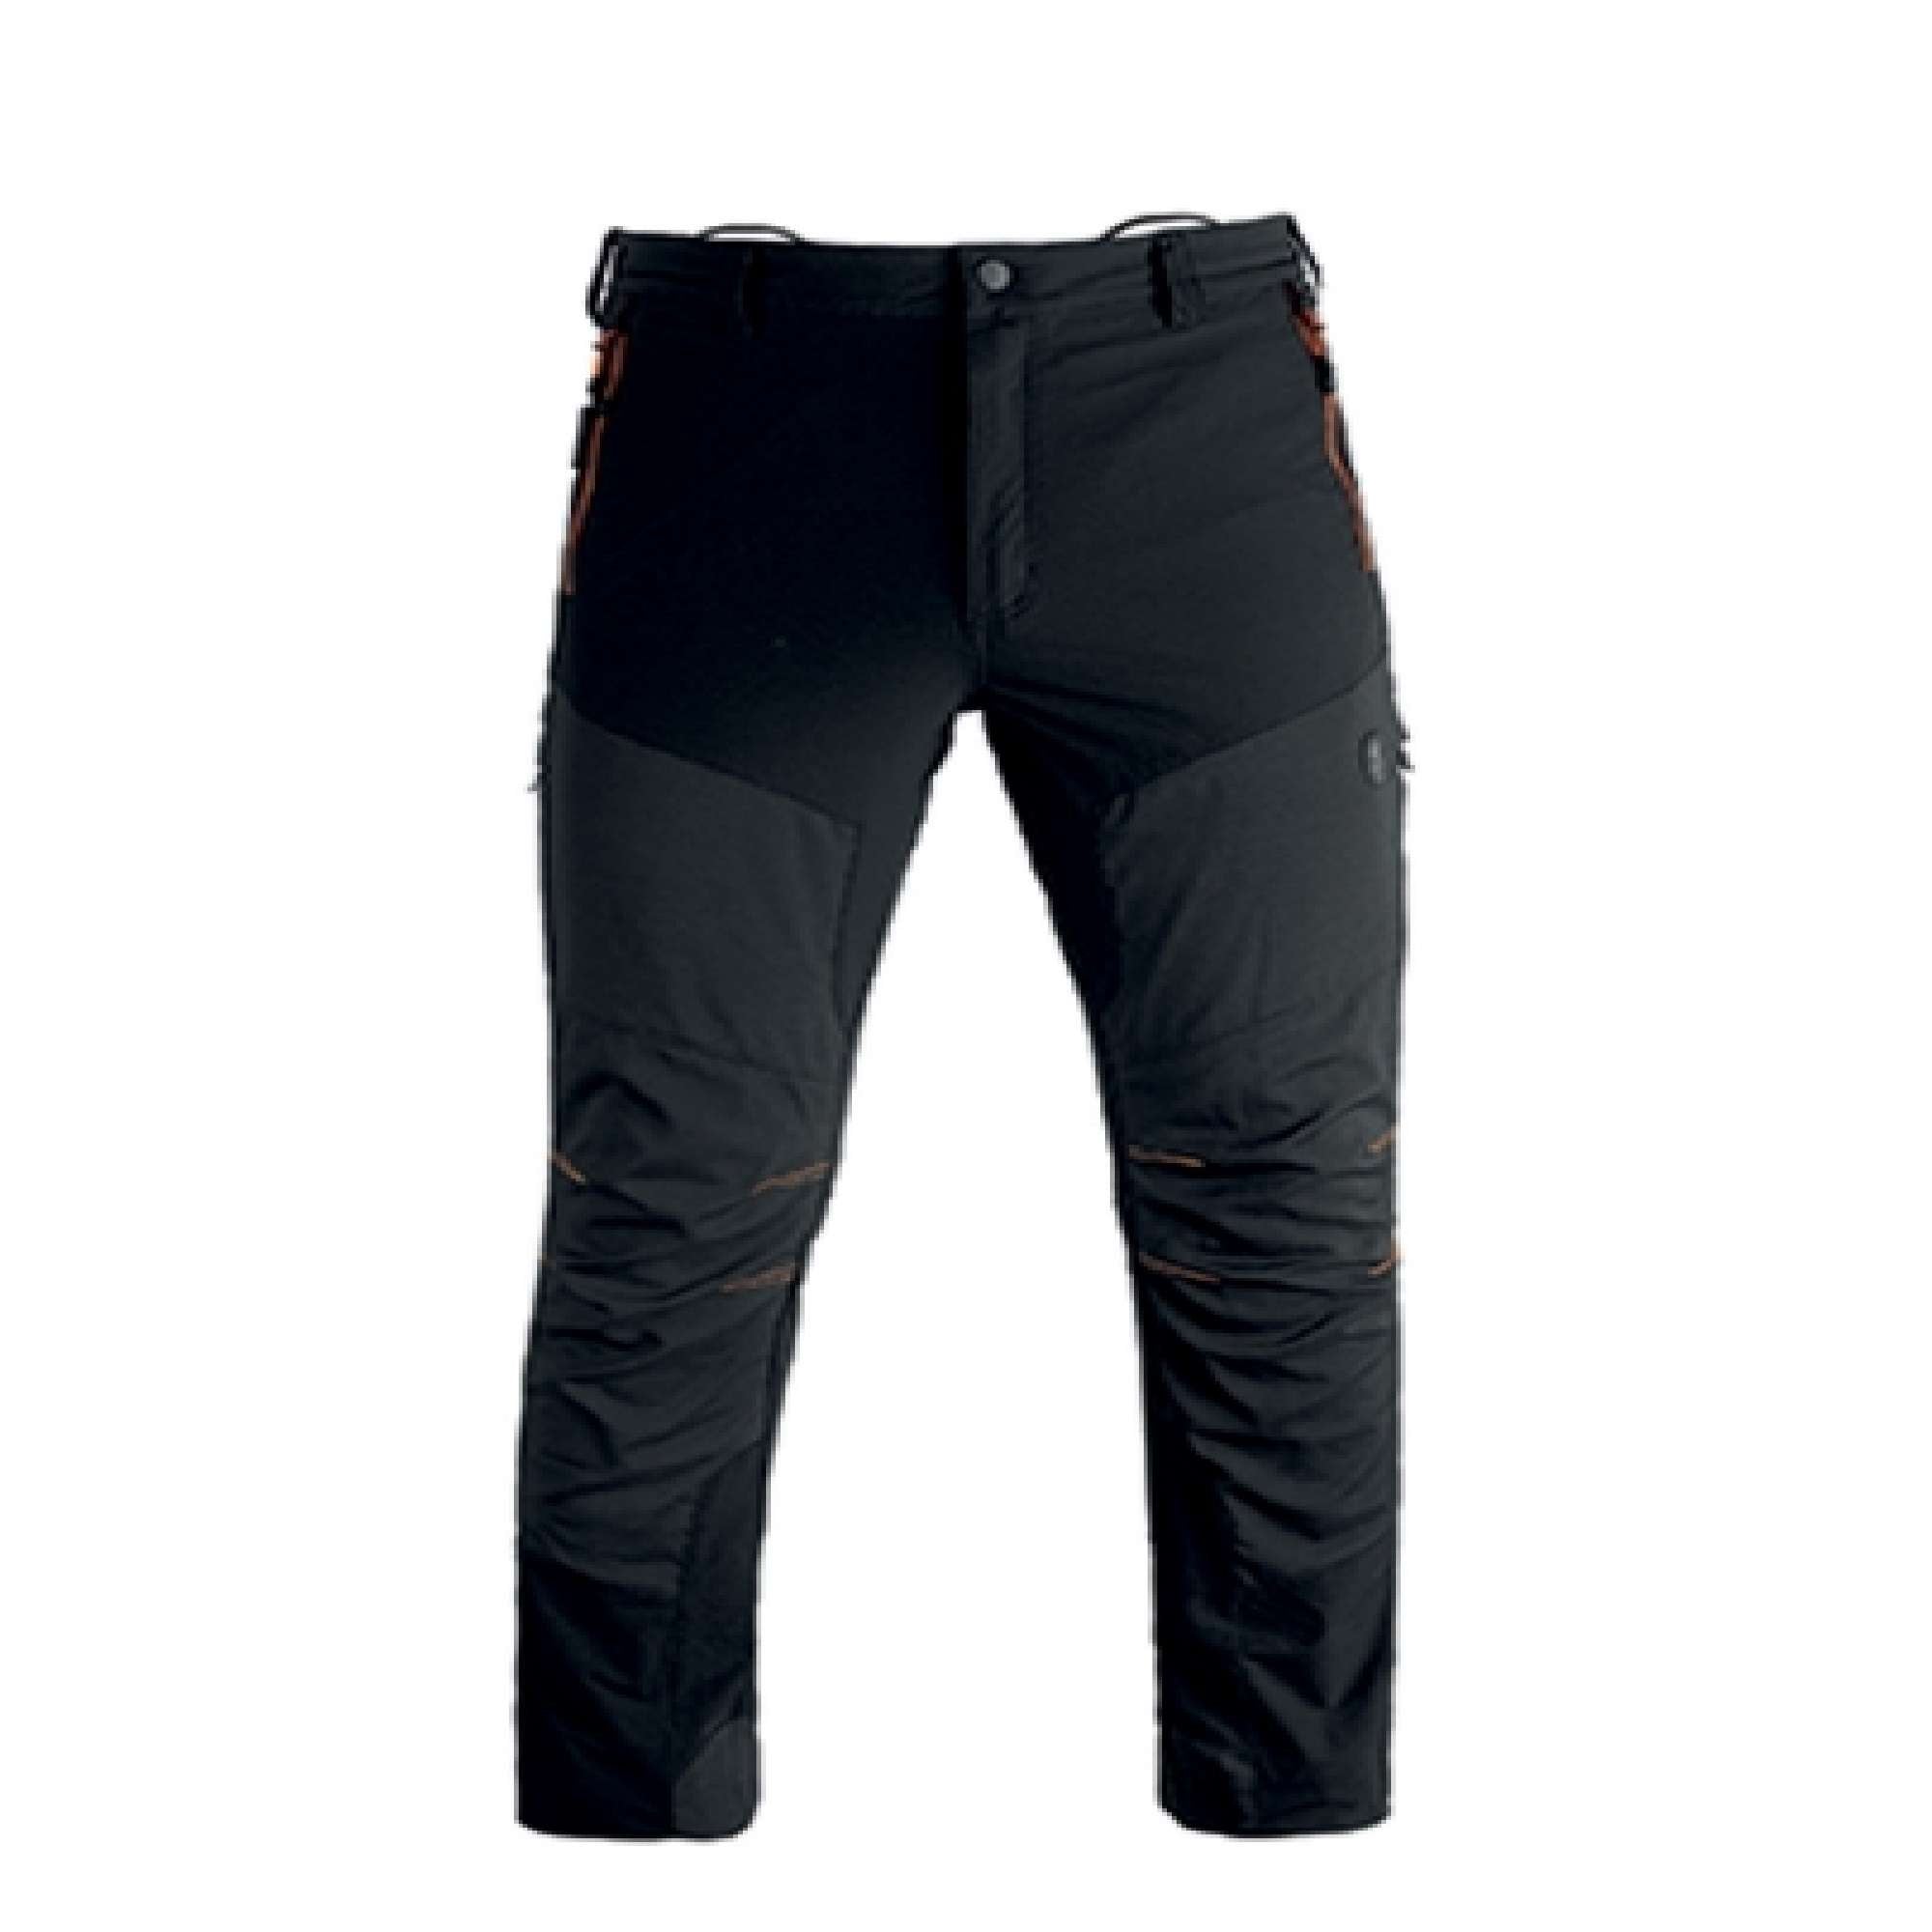 TECH trousers grey L - 36962 Kapriol